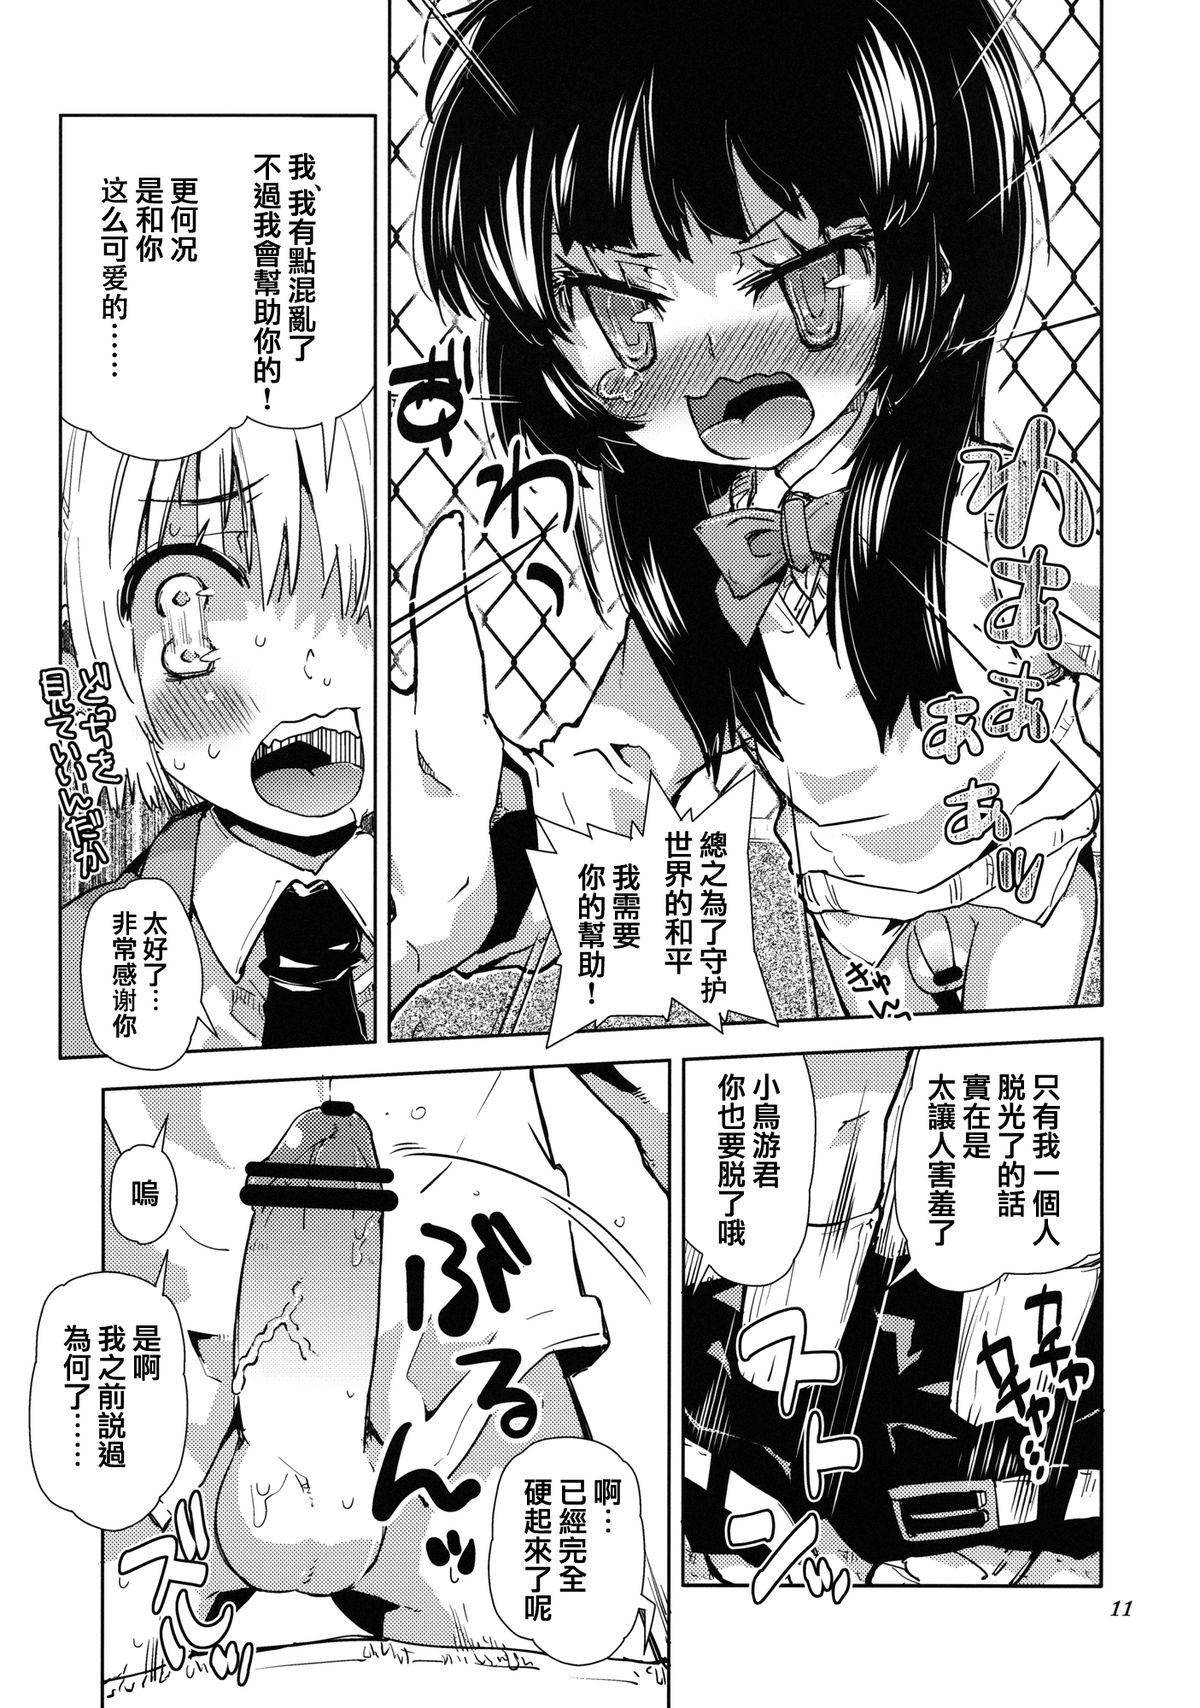 Ball Sucking Sekai ga Dou Toka itsu Chau Otoko no Musume wa Denpa Kawaii. Abg - Page 9